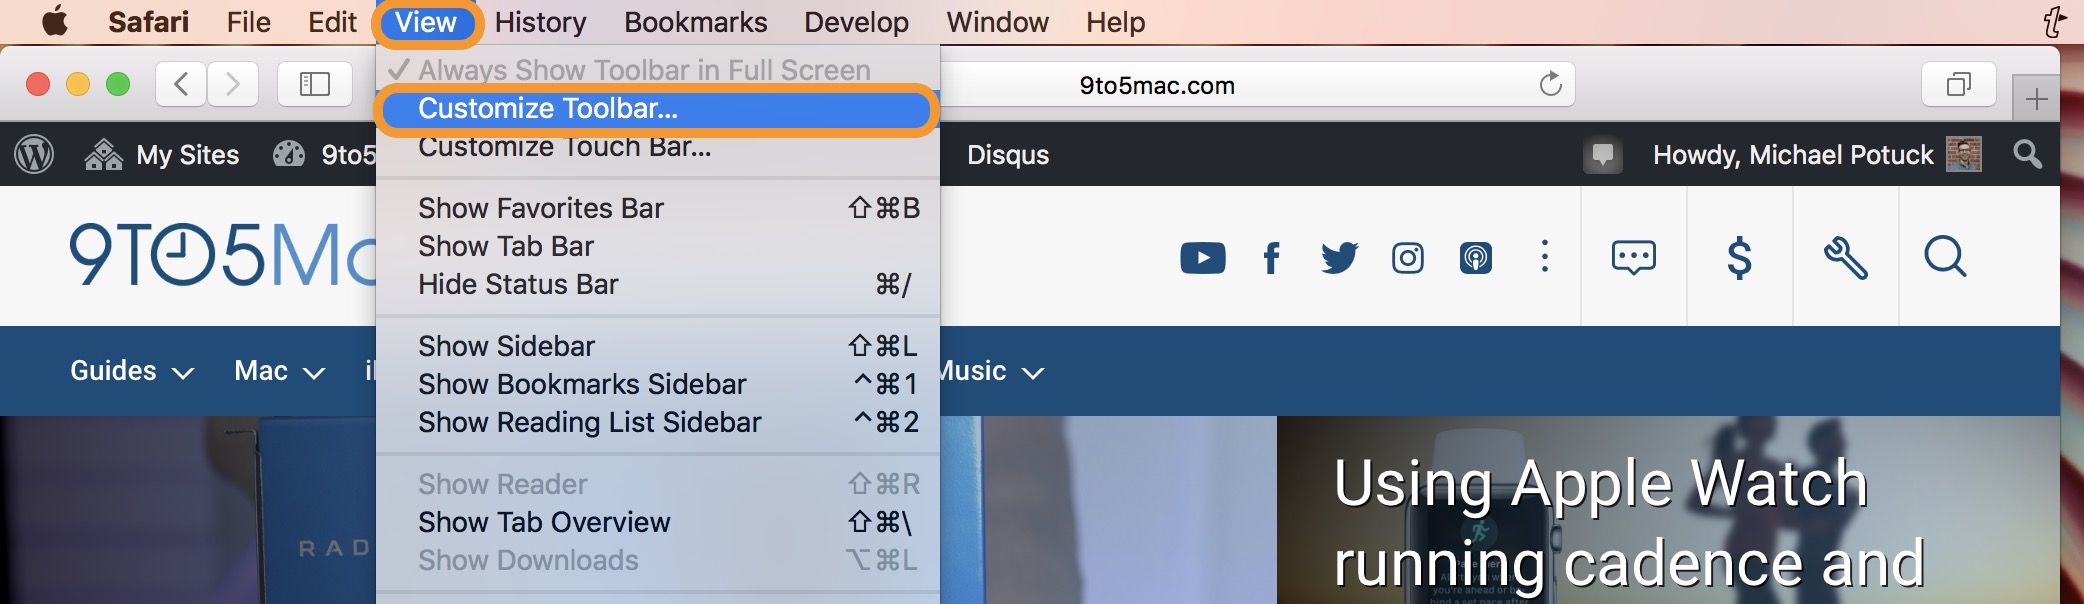 customize toolbar safari mac